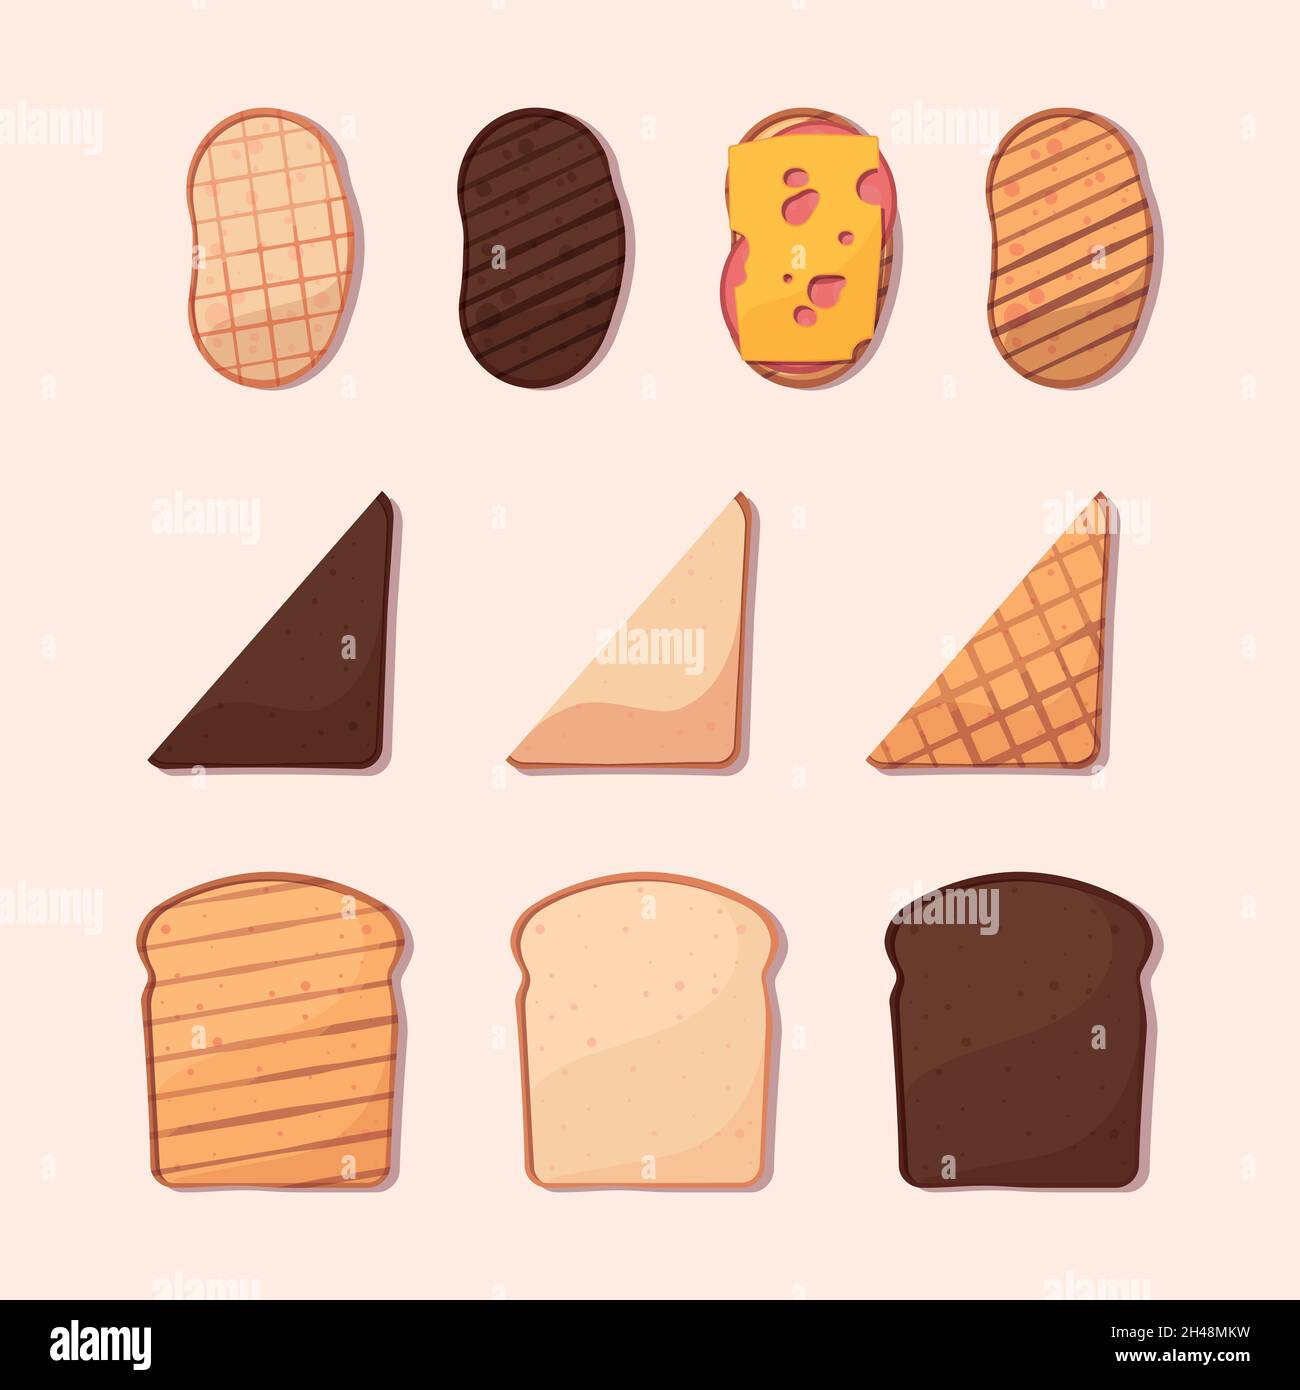 Cartoon-Toasts. Französische Brote frisch geschnitten Kochen köstliche Snacks zum Frühstück grellen Vektor flache Bilder Sammlung Stock Vektor